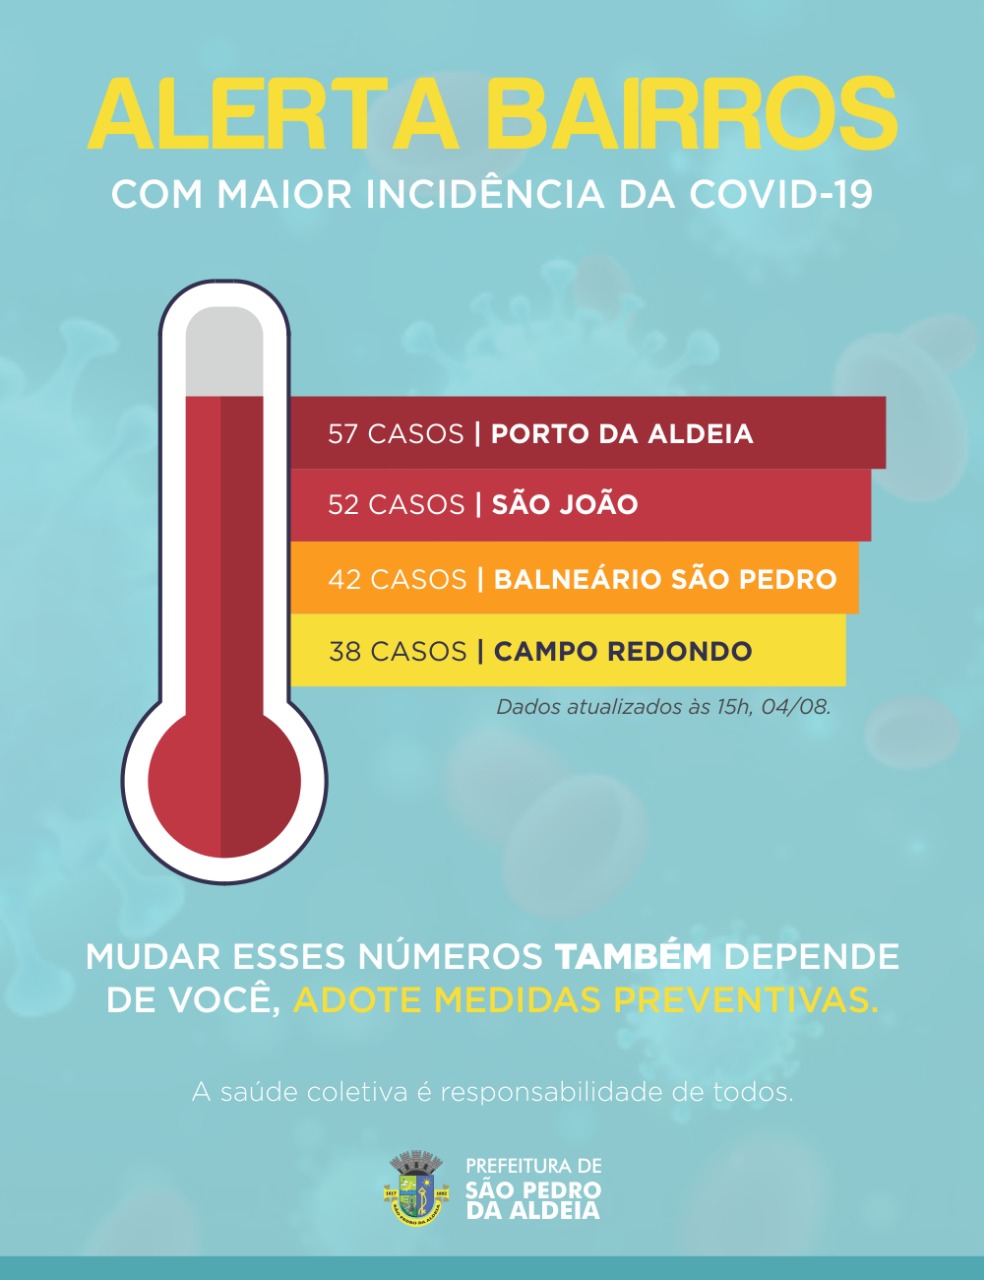 Segundo o boletim divulgado pela Prefeitura de São Pedro da Aldeia, nesta terça-feira (04/08), o município totaliza 736 casos de Covid-19 confirmados